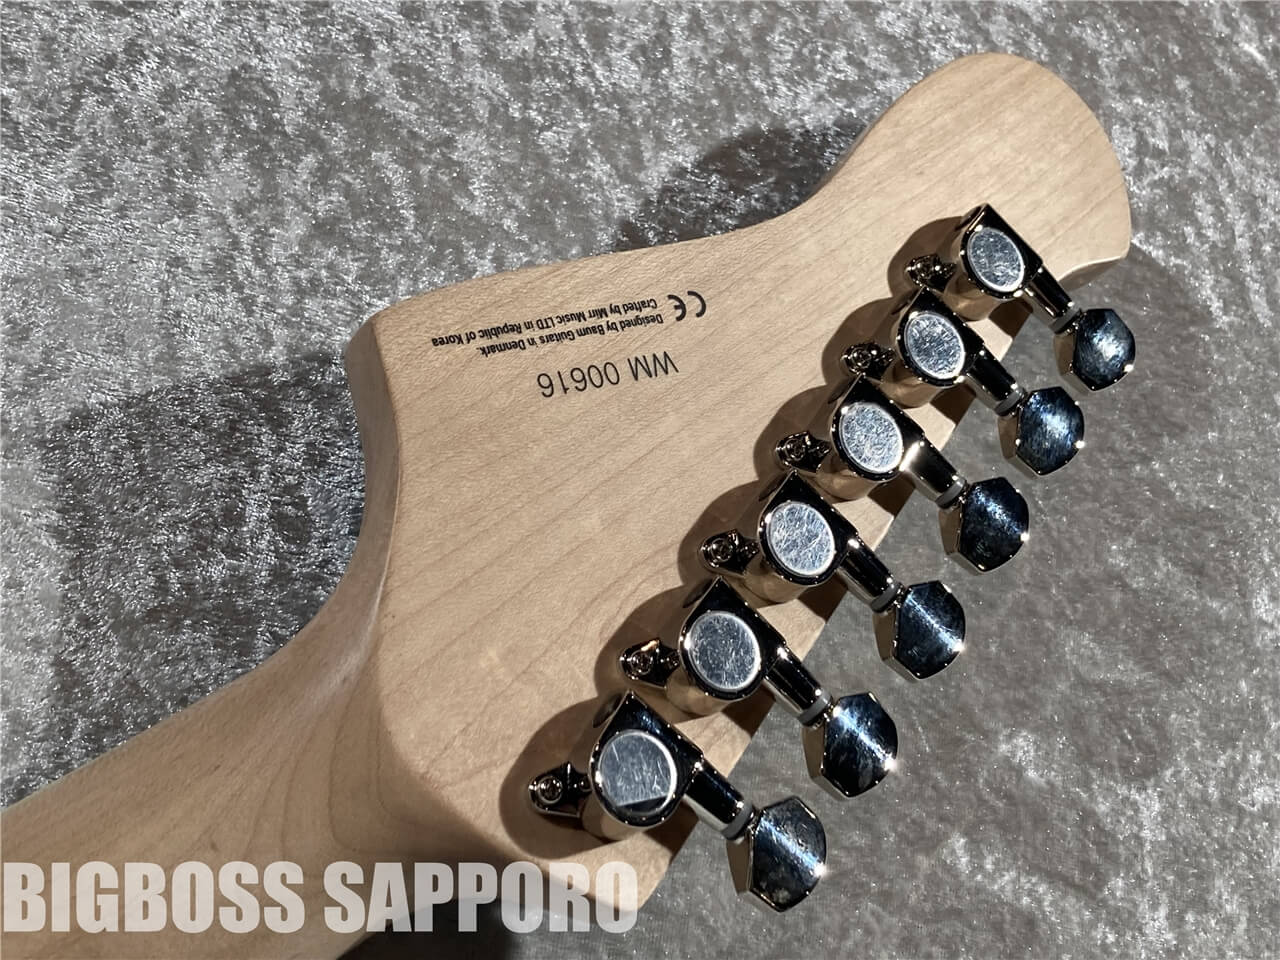 【即納可能】Baum Guitars(バウムギターズ) Wingman-W with Tremolo (Coral Blue) 札幌店